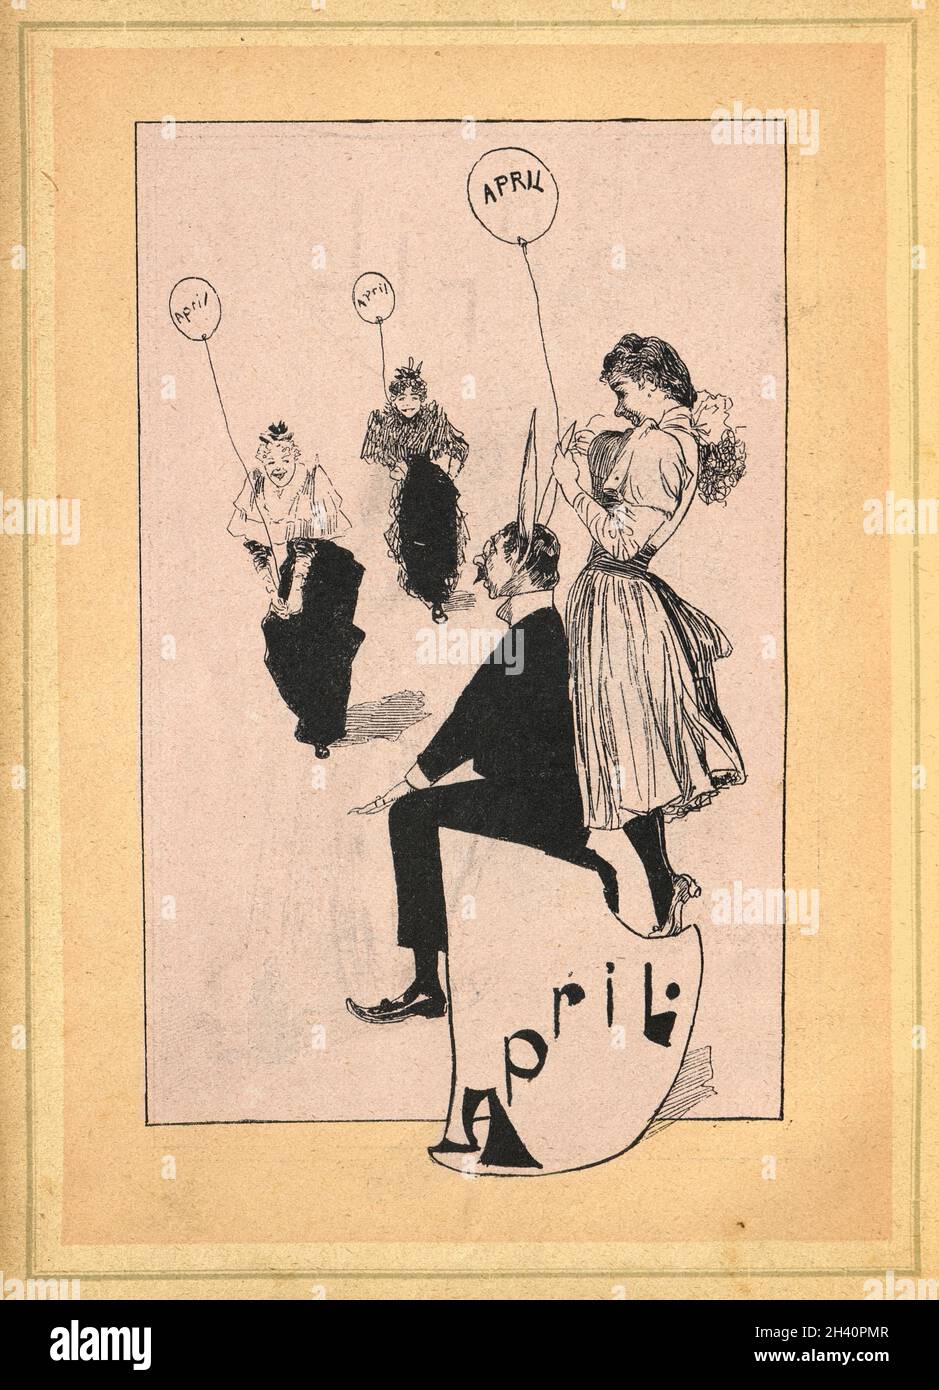 Caricature victorienne, April Fool's Day, fille jouant de la queue sur un homme, Caviar Kalender, 1893, 19e siècle Banque D'Images